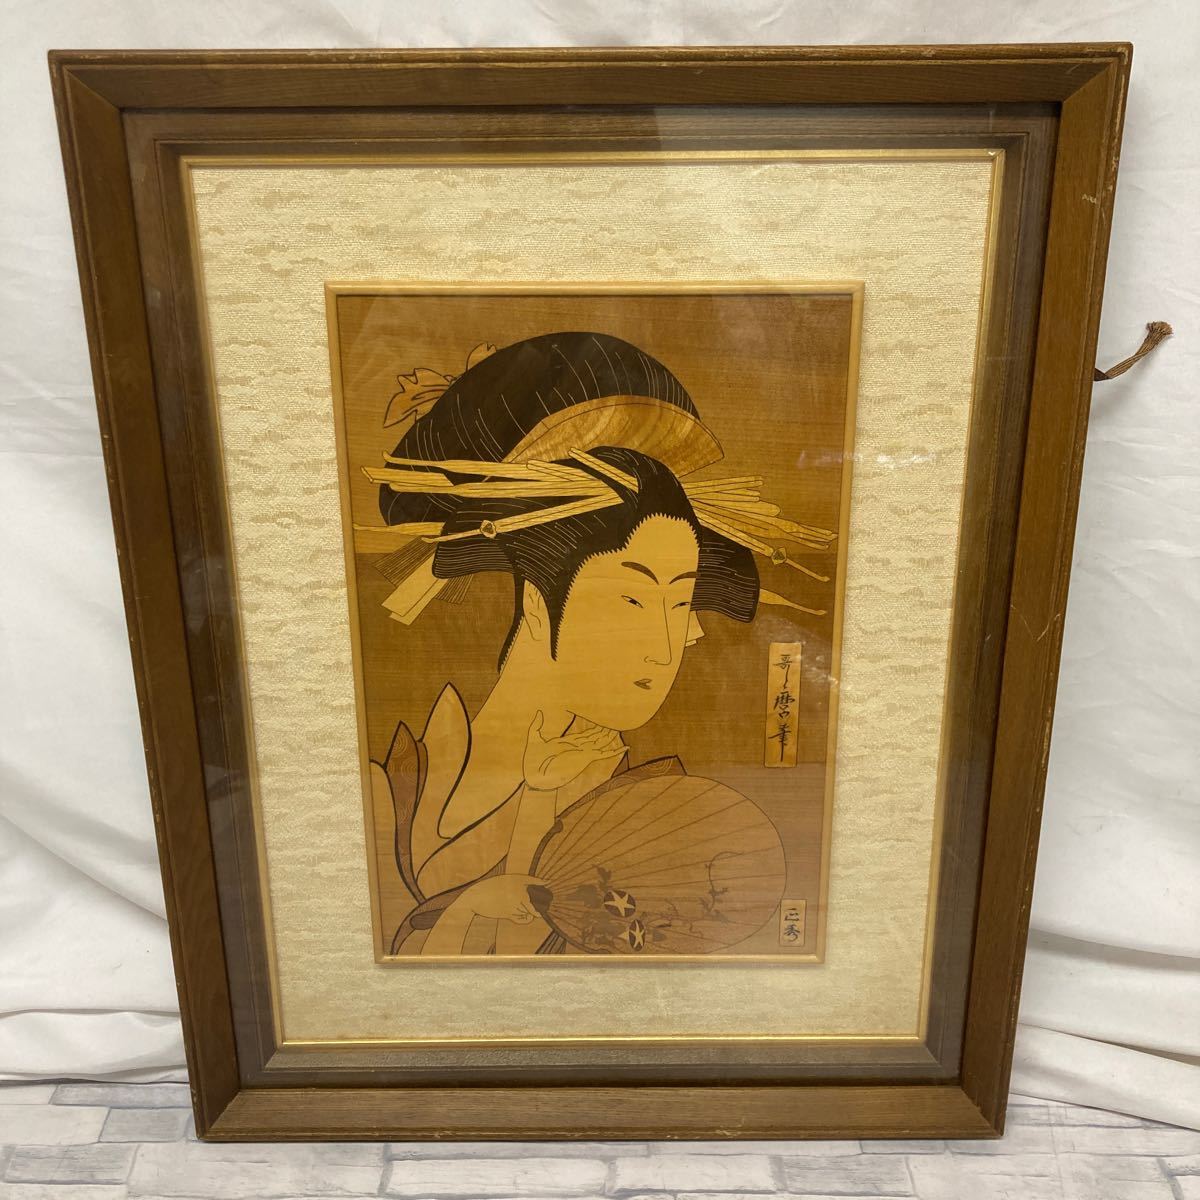 1622番　長澤正秀 作 喜多川歌麿　団扇を持つおひさ 箱根寄木細工　美人画　木象嵌　額装